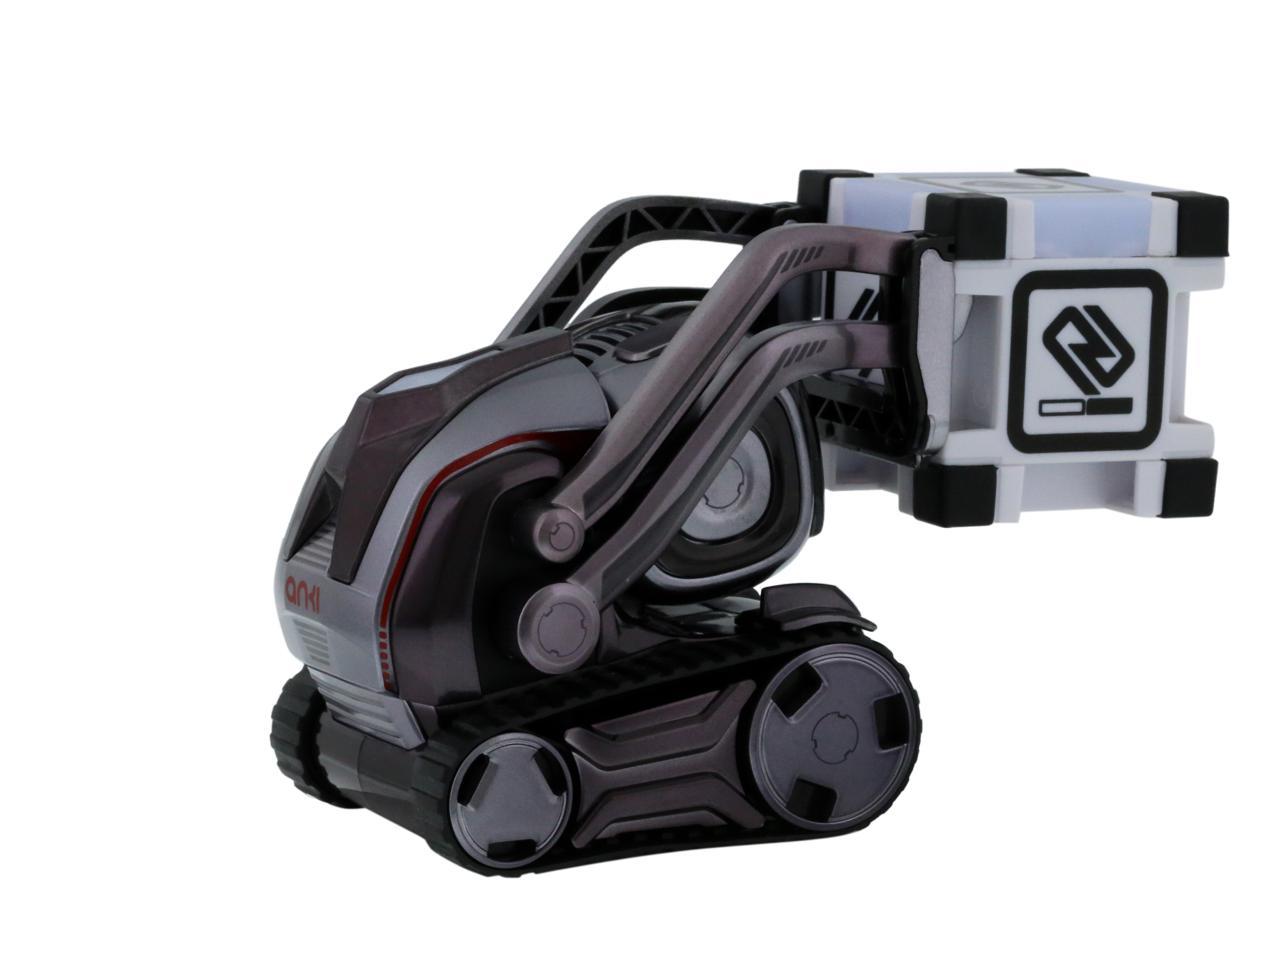 Anki Cozmo Collector's Edition Real-life Robot - Newegg.com